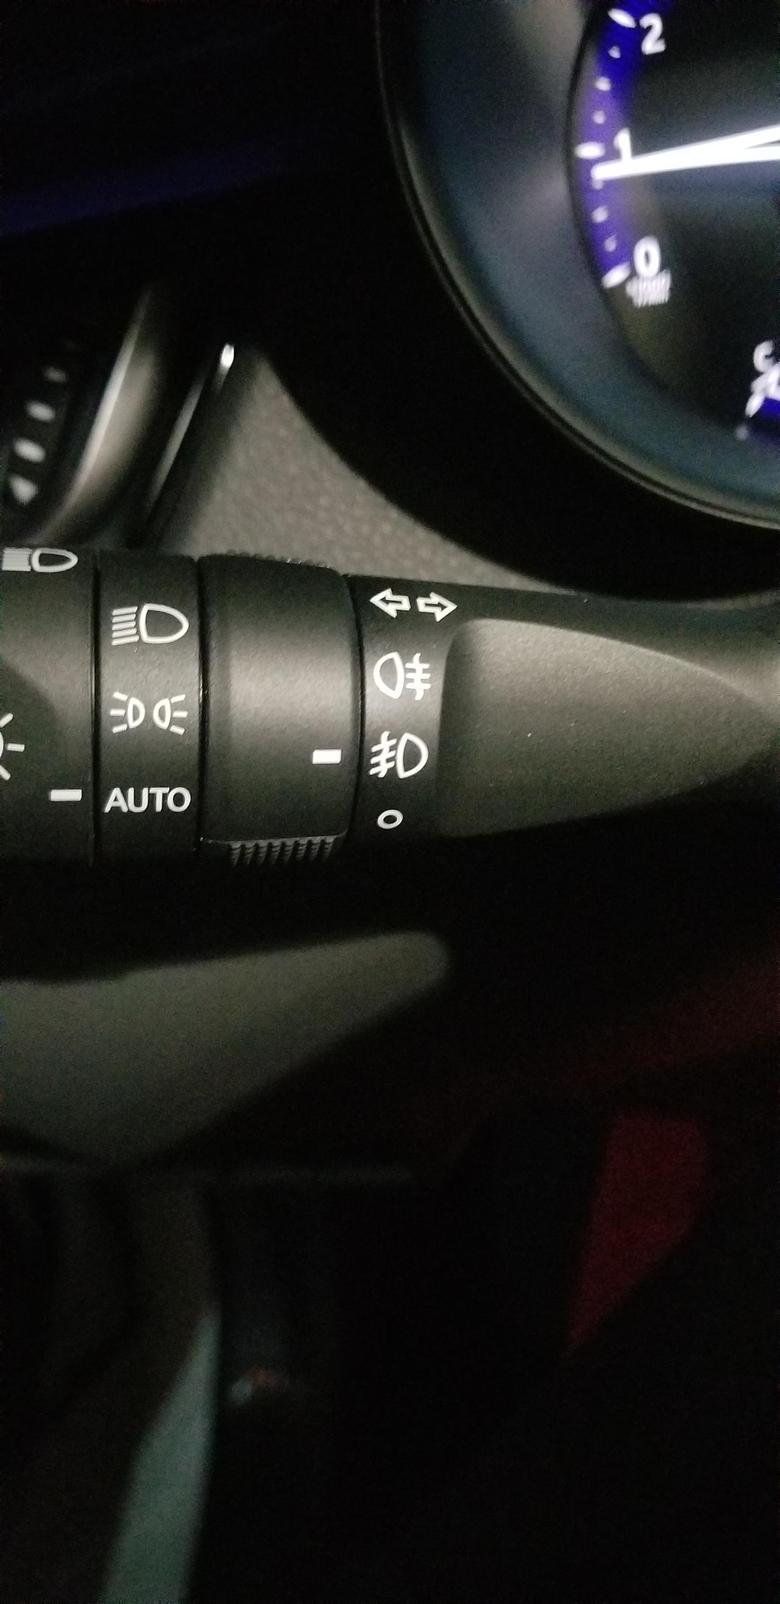 丰田c hr 右边这几个按钮是雾灯吧，豪华版，为啥雾灯不亮